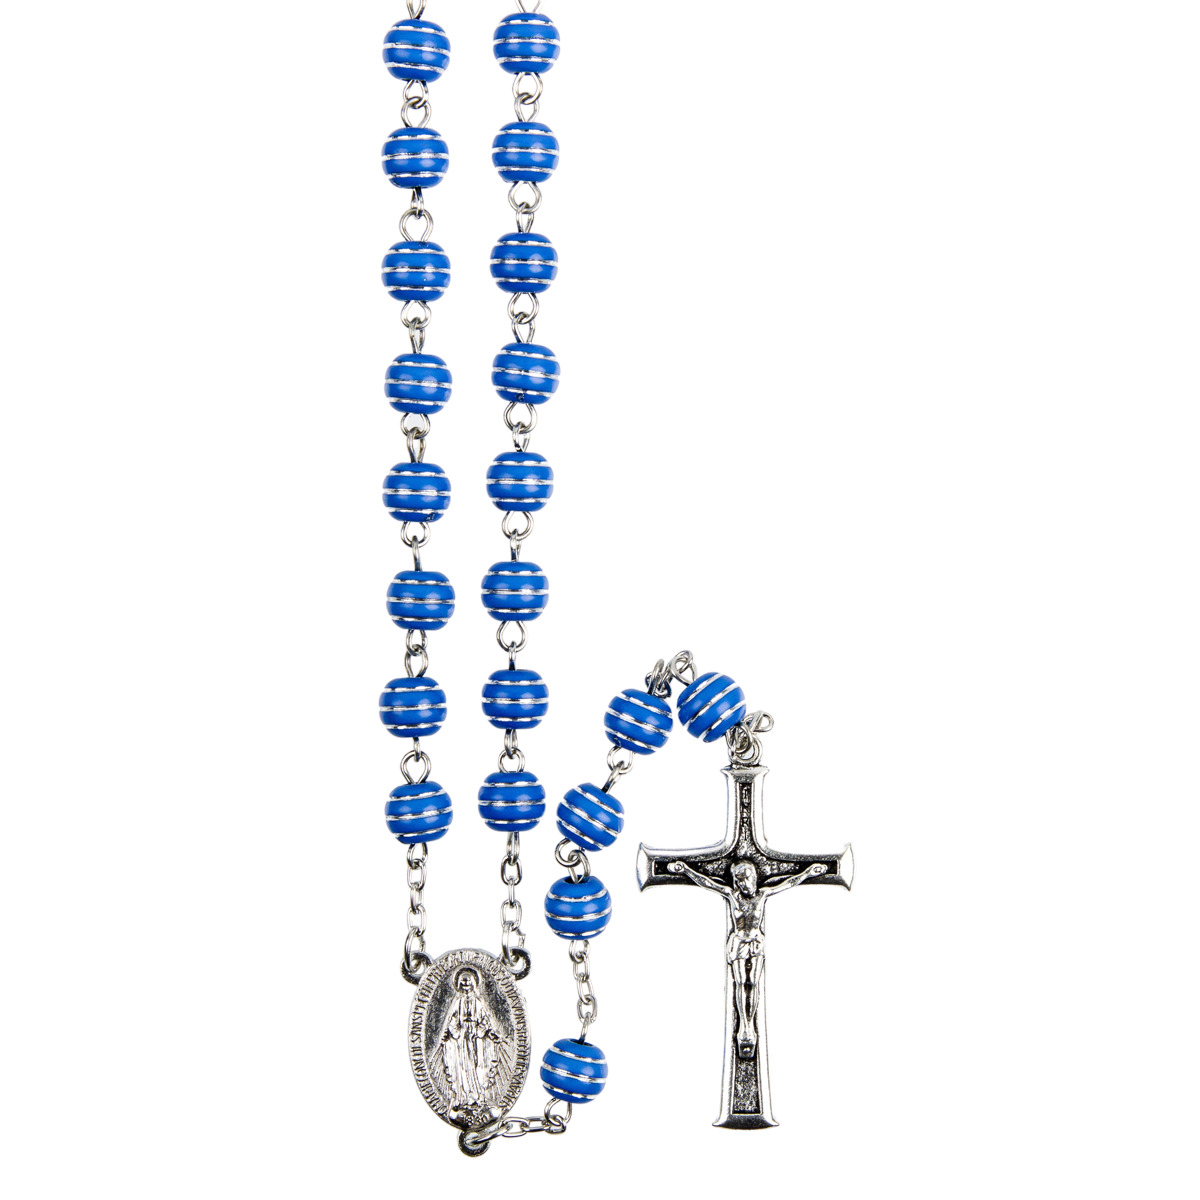 Chapelet grains striés argentés, Ø 7 mm, chaîne couleur argentée, longueur au cœur 32 cm, croix avec Christ.